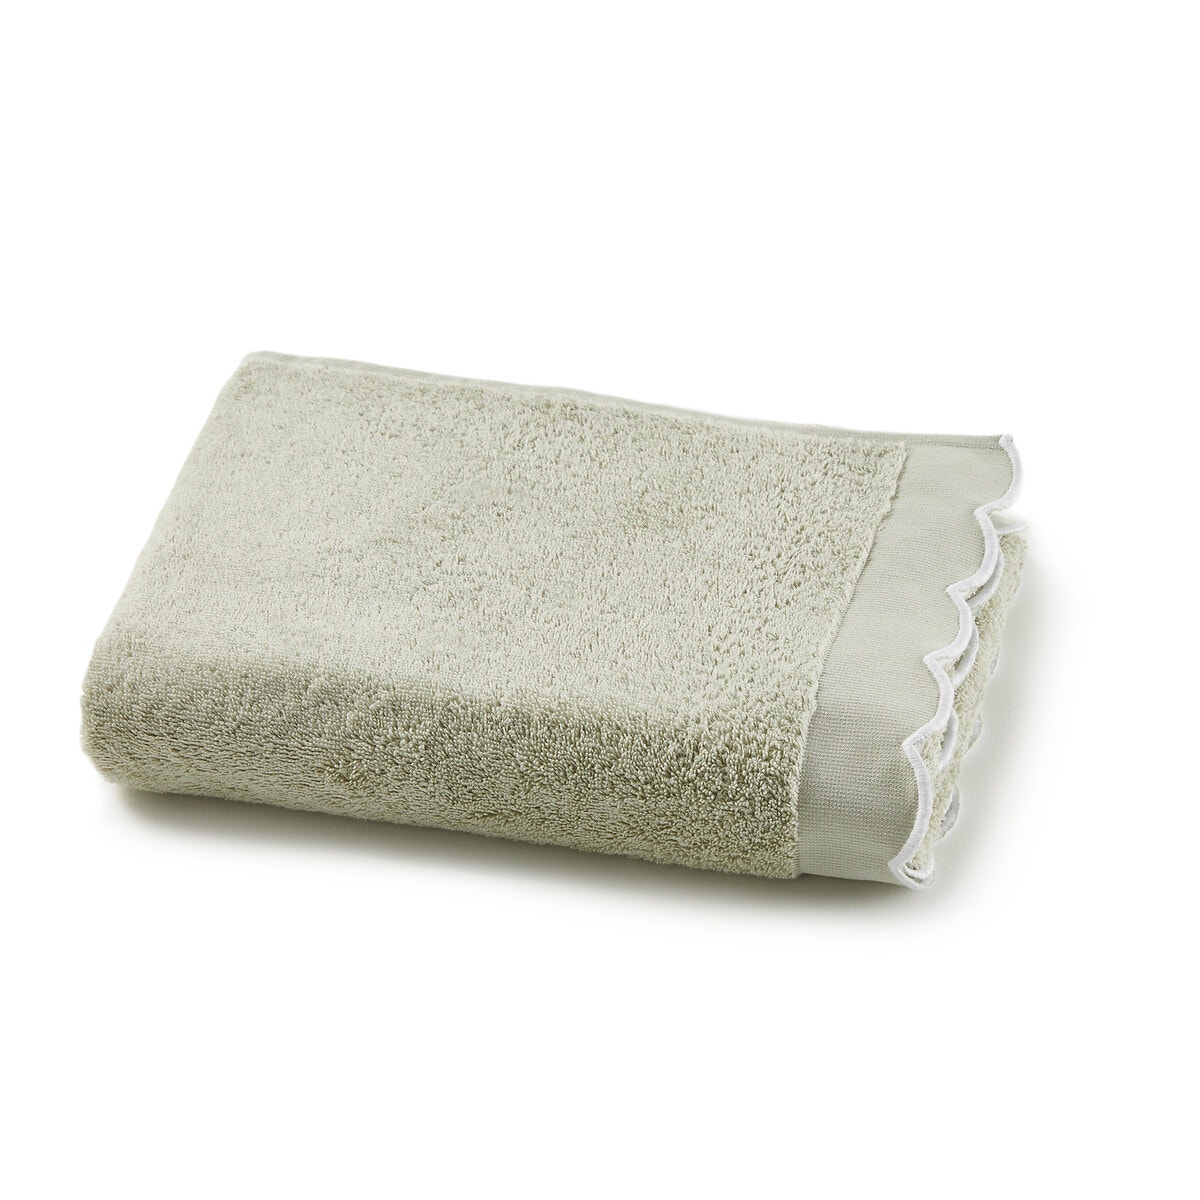 Σπίτι > Λευκά είδη > Μπάνιο > Πετσέτες προσώπου Μονόχρωμη πετσέτα προσώπου 500g 50x100 cm